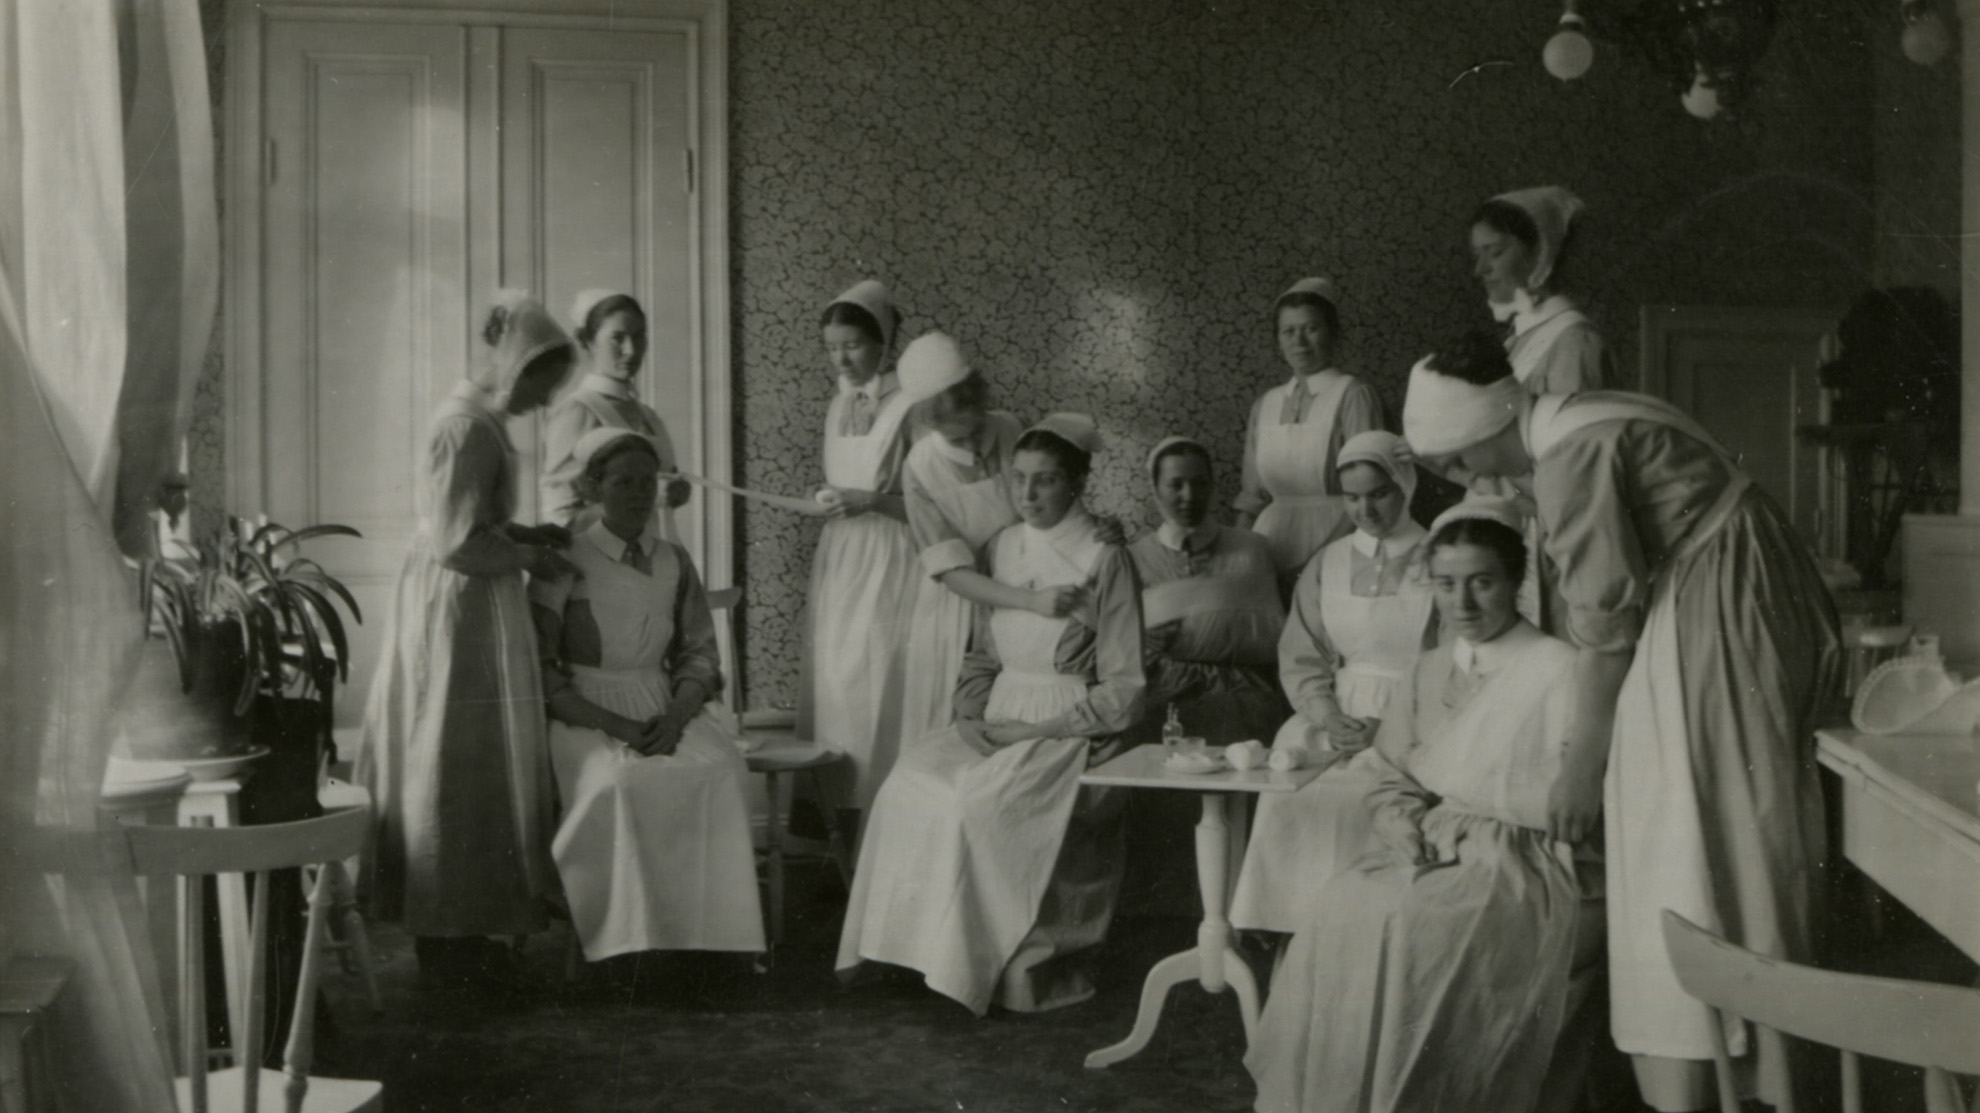 Historisk bild från Ersta sjukhus